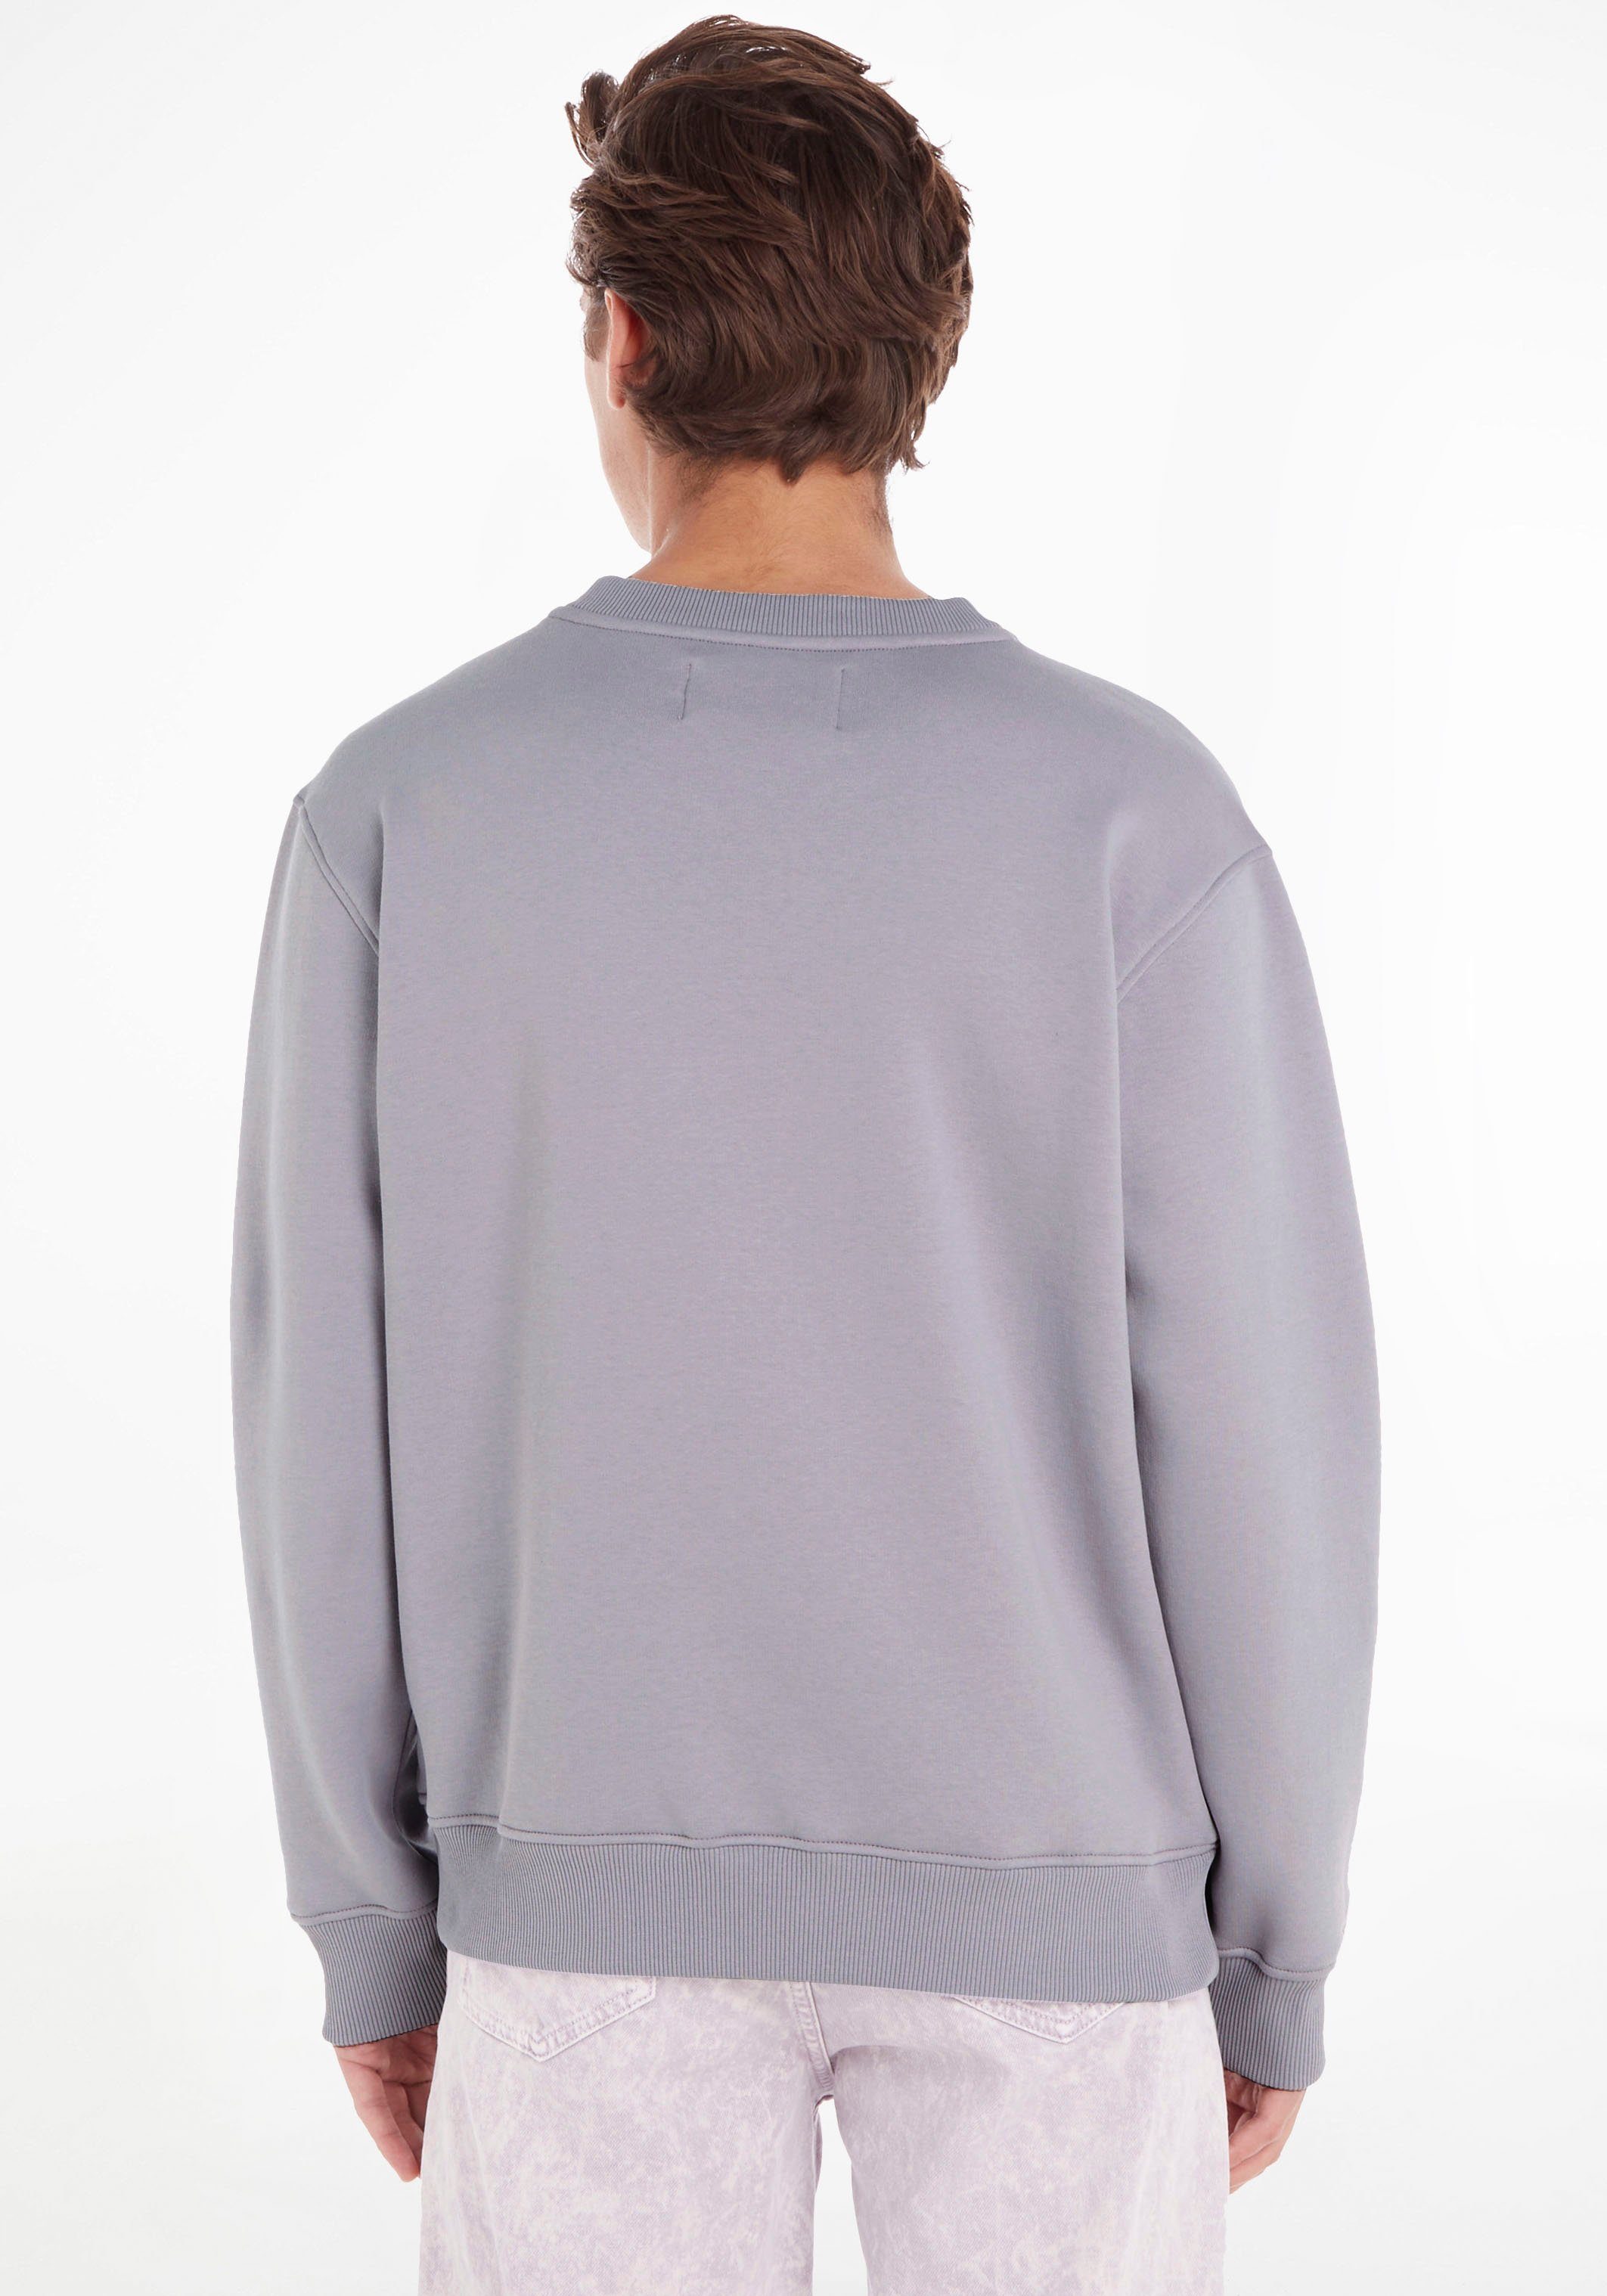 Calvin Klein NECK Lavender Aura Jeans MONOLOGO CREW Sweatshirt